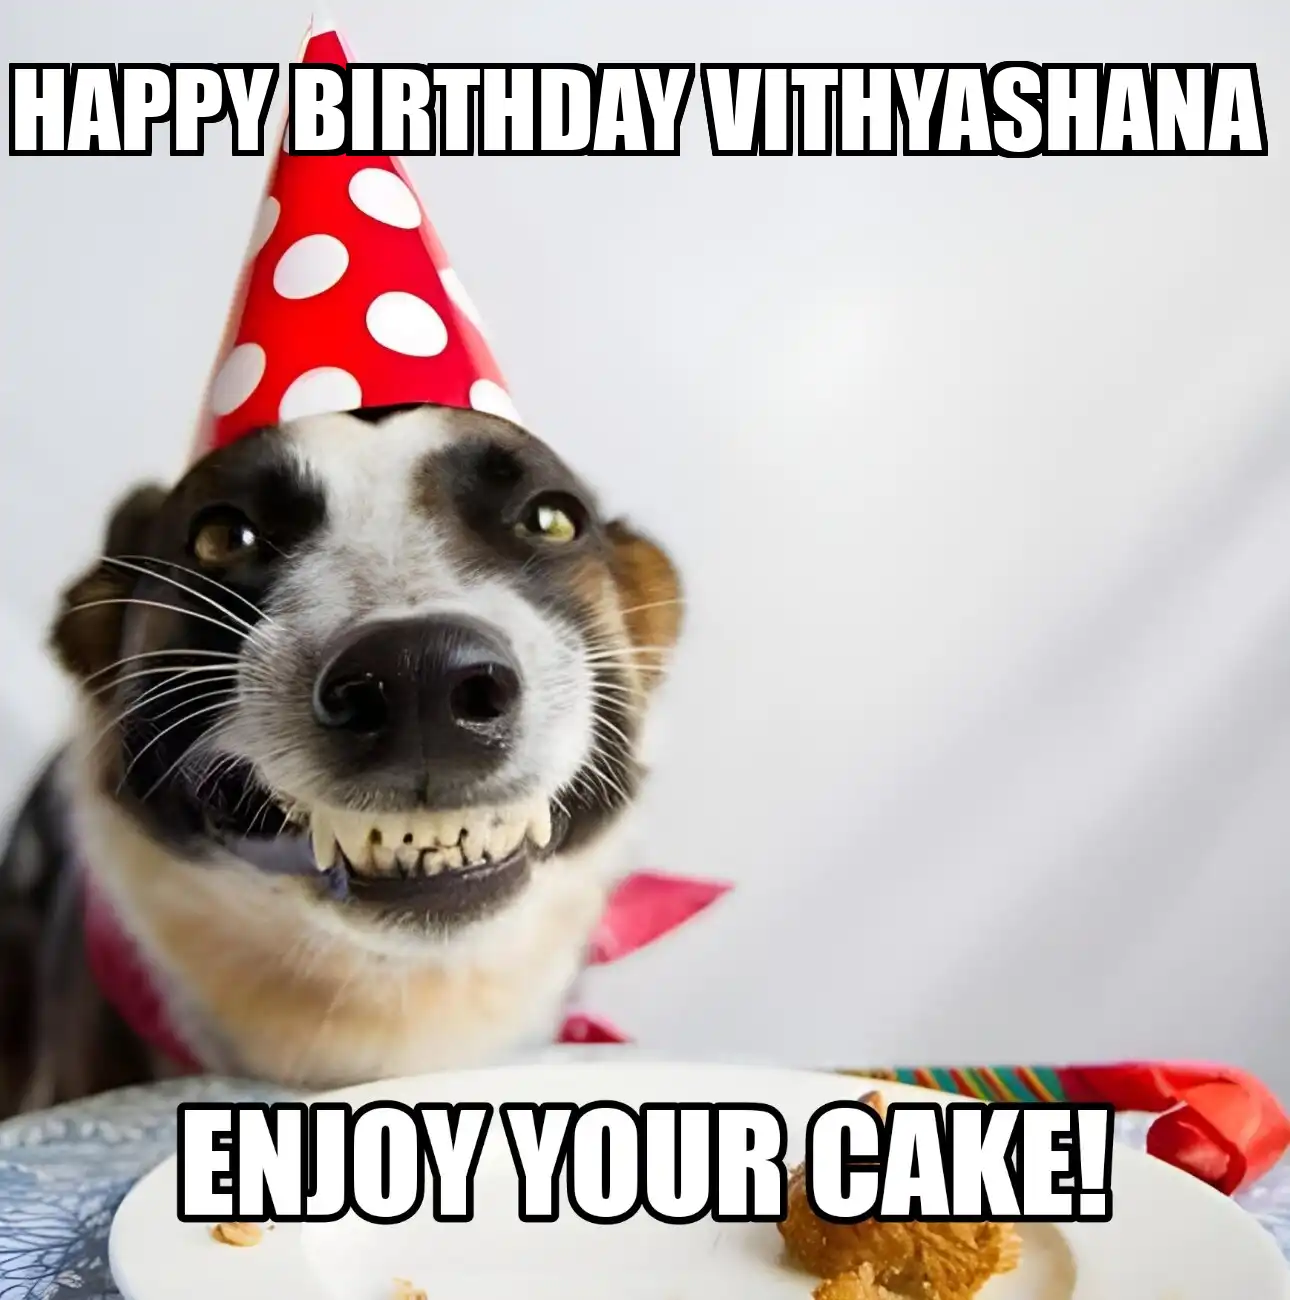 Happy Birthday Vithyashana Enjoy Your Cake Dog Meme